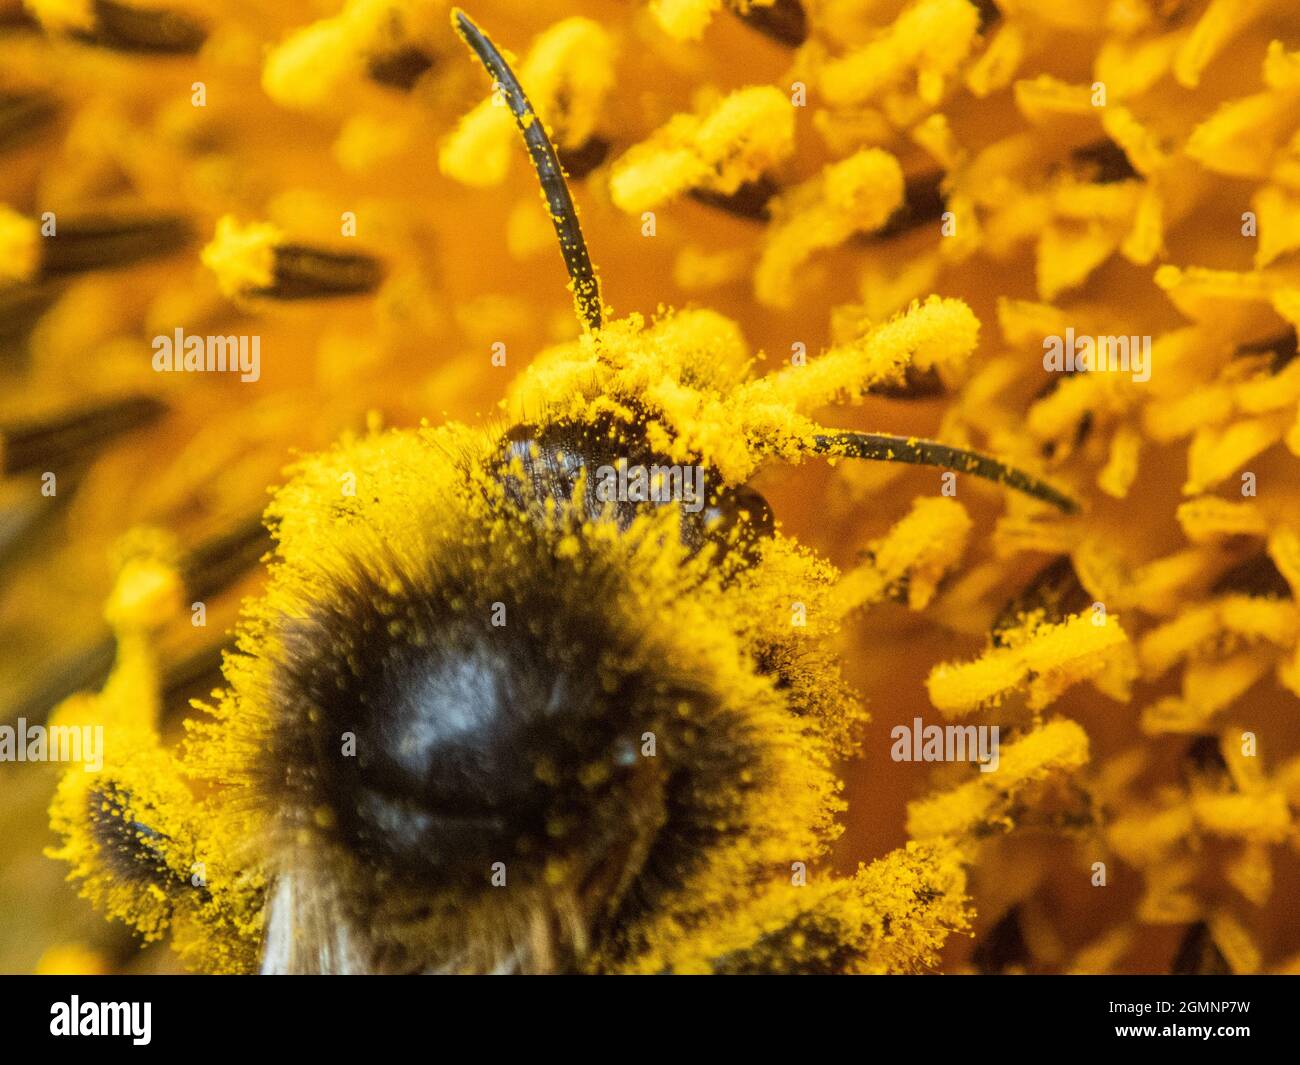 Pollenazione naturale. Un'ape coperta di polline che inquinano una pianta, Wield, Hampshire, Regno Unito Foto Stock